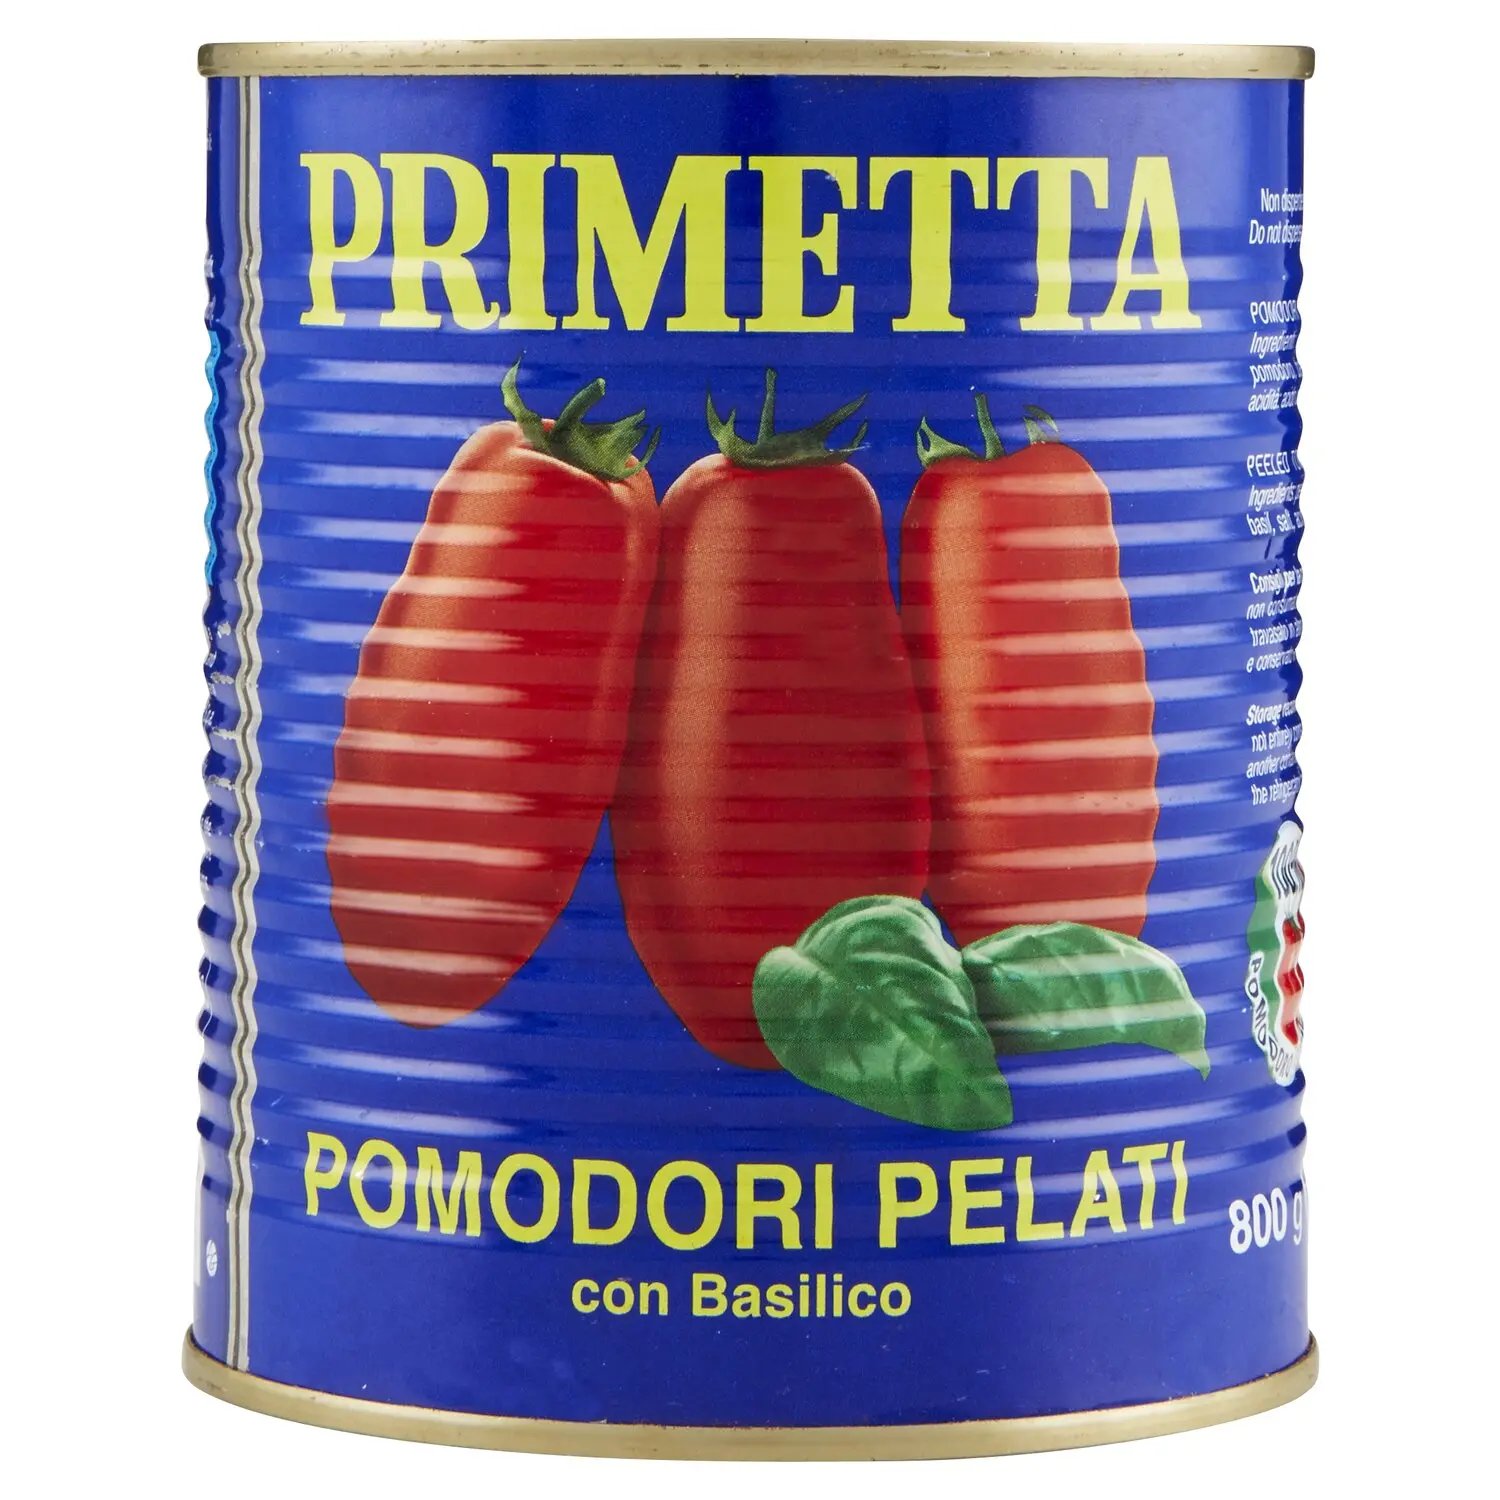 Primetta Pomodori Pelati con Basilico 800 g